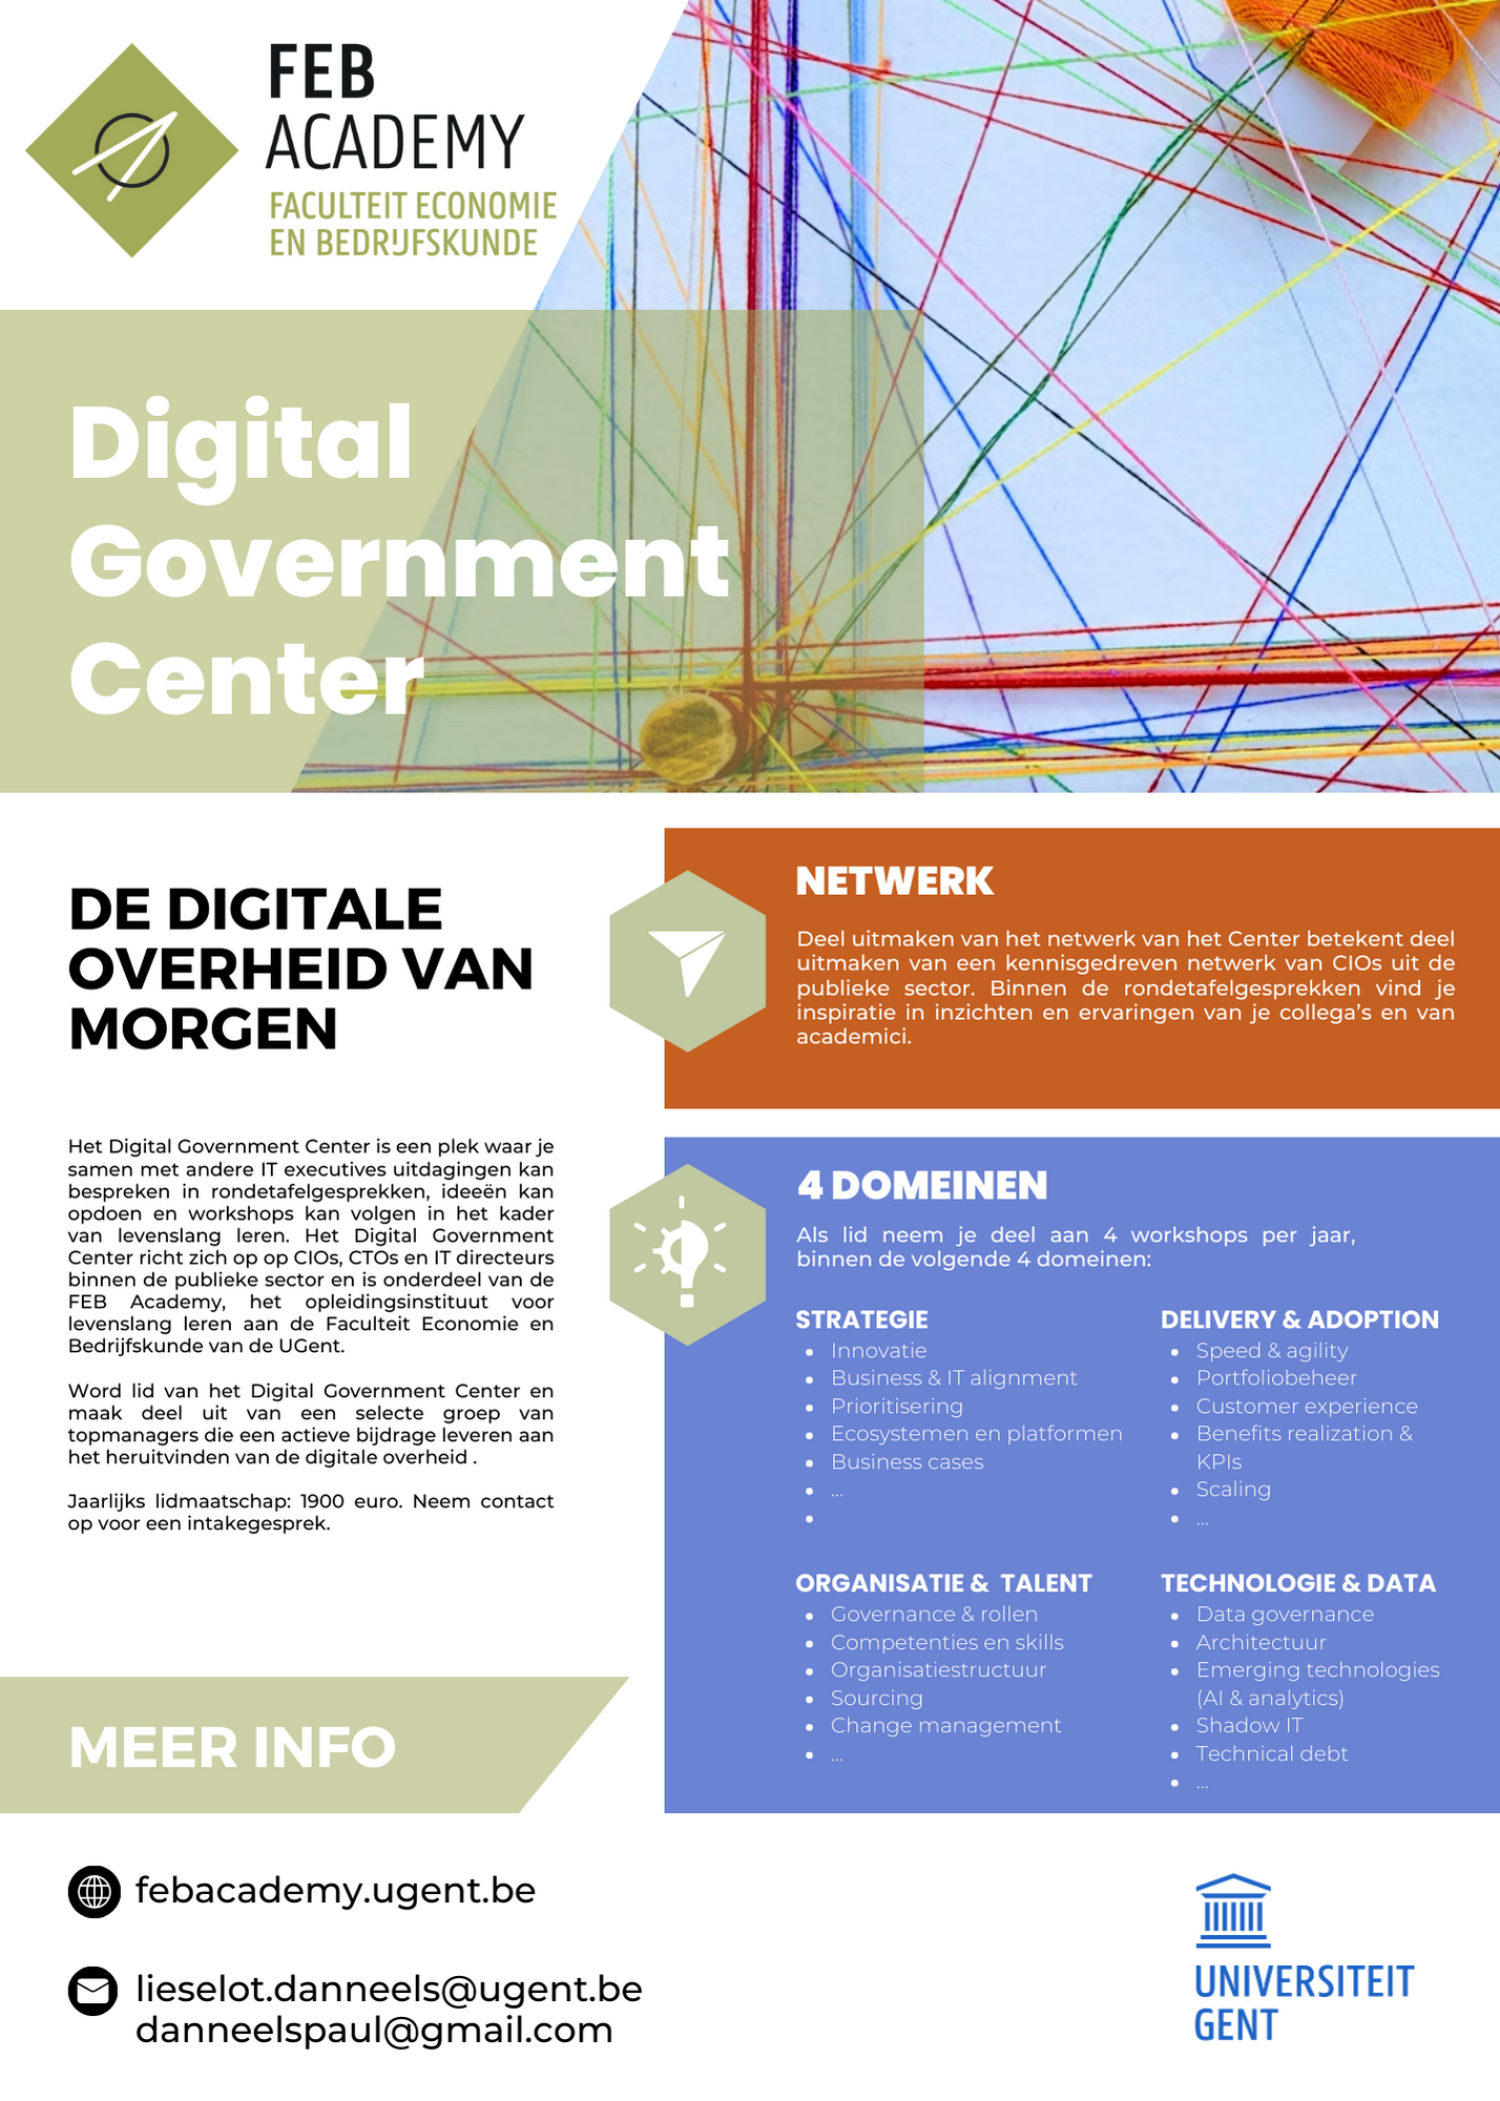 Digital Government Center